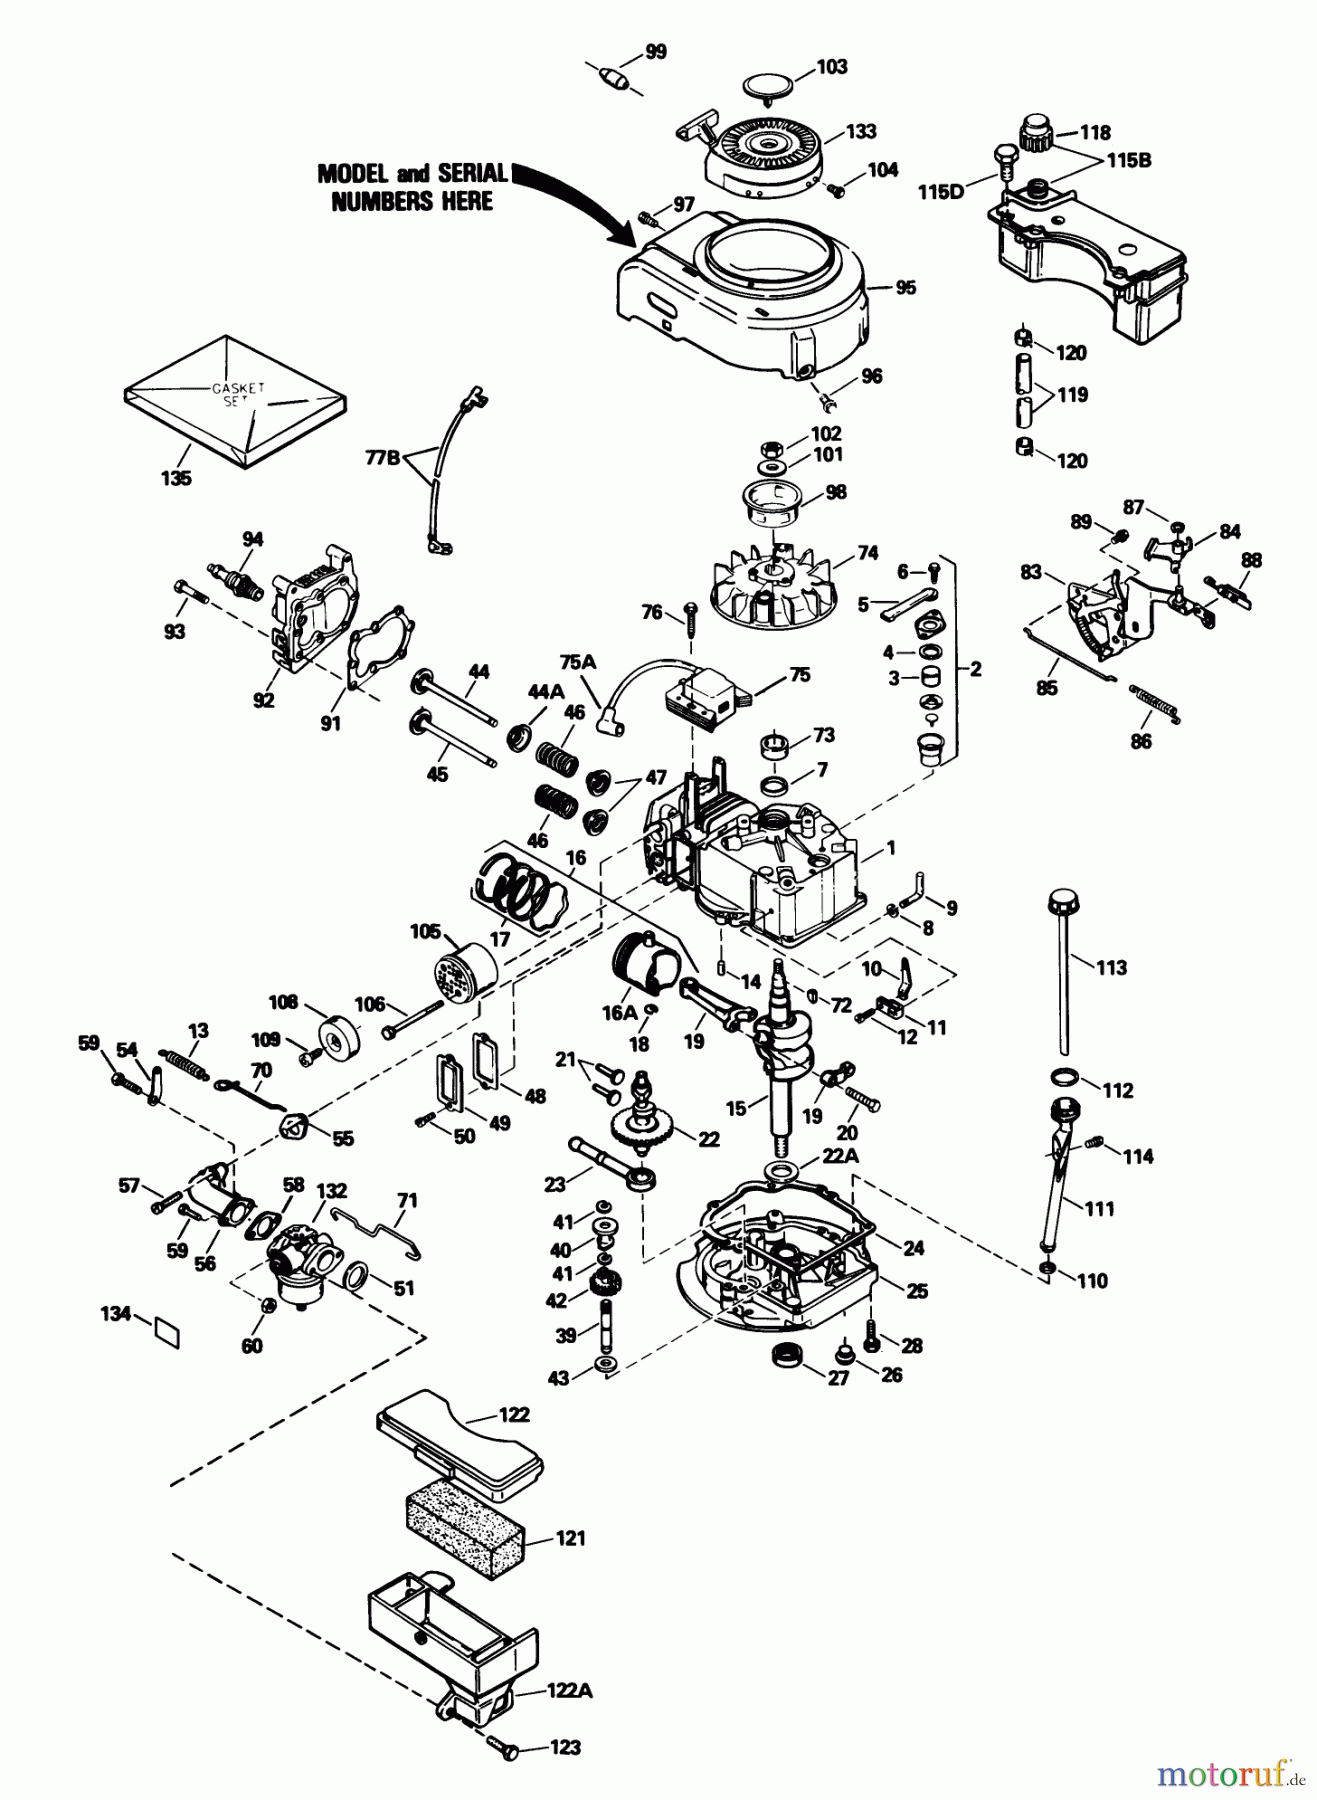  Toro Neu Mowers, Walk-Behind Seite 1 20511 - Toro Lawnmower, 1989 (9000001-9999999) ENGINE MODEL NO. TVS90-43432F